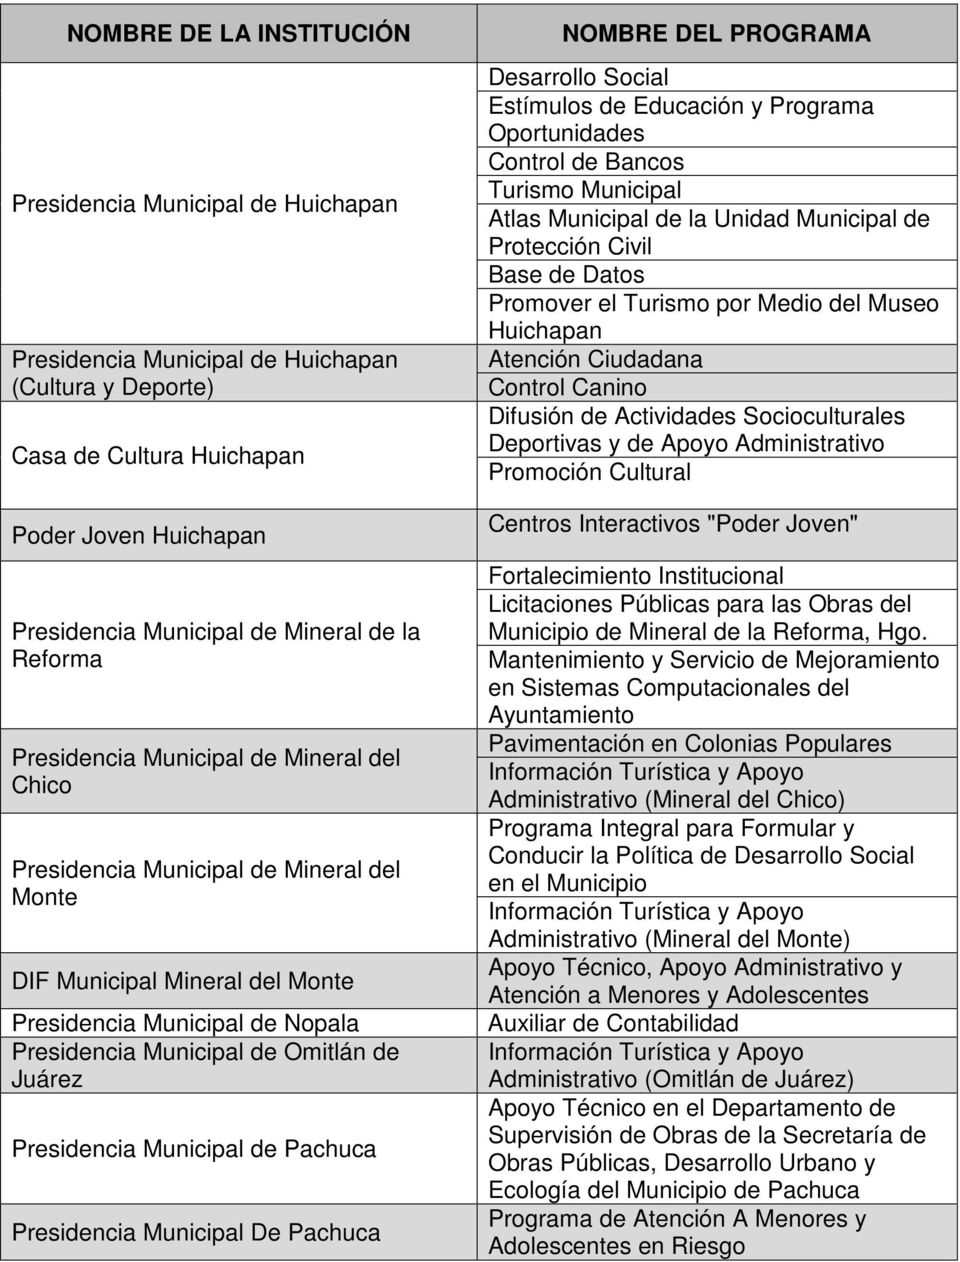 Municipal de Pachuca Presidencia Municipal De Pachuca Desarrollo Social Estímulos de Educación y Programa Oportunidades Control de Bancos Turismo Municipal Atlas Municipal de la Unidad Municipal de